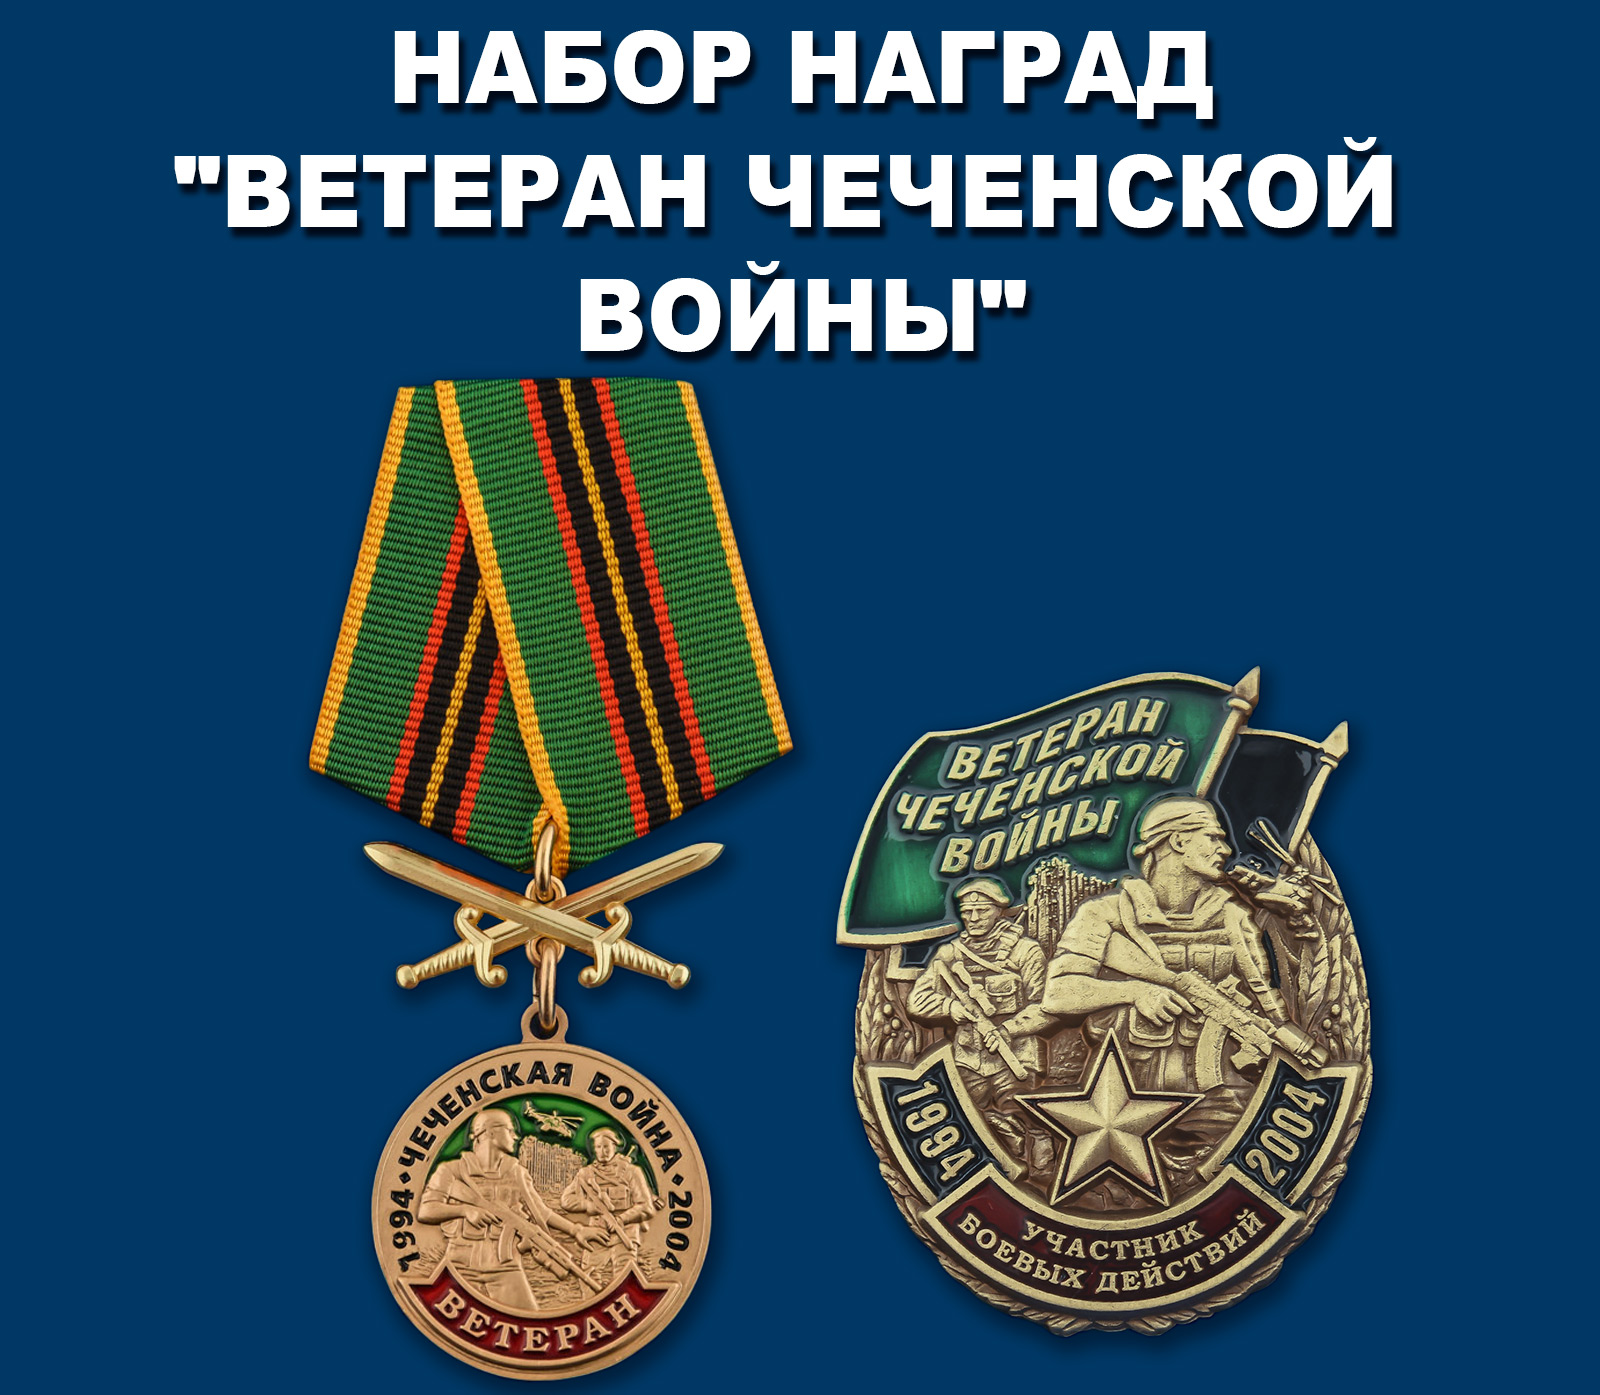 Купить набор наград "Ветеран Чеченской войны"